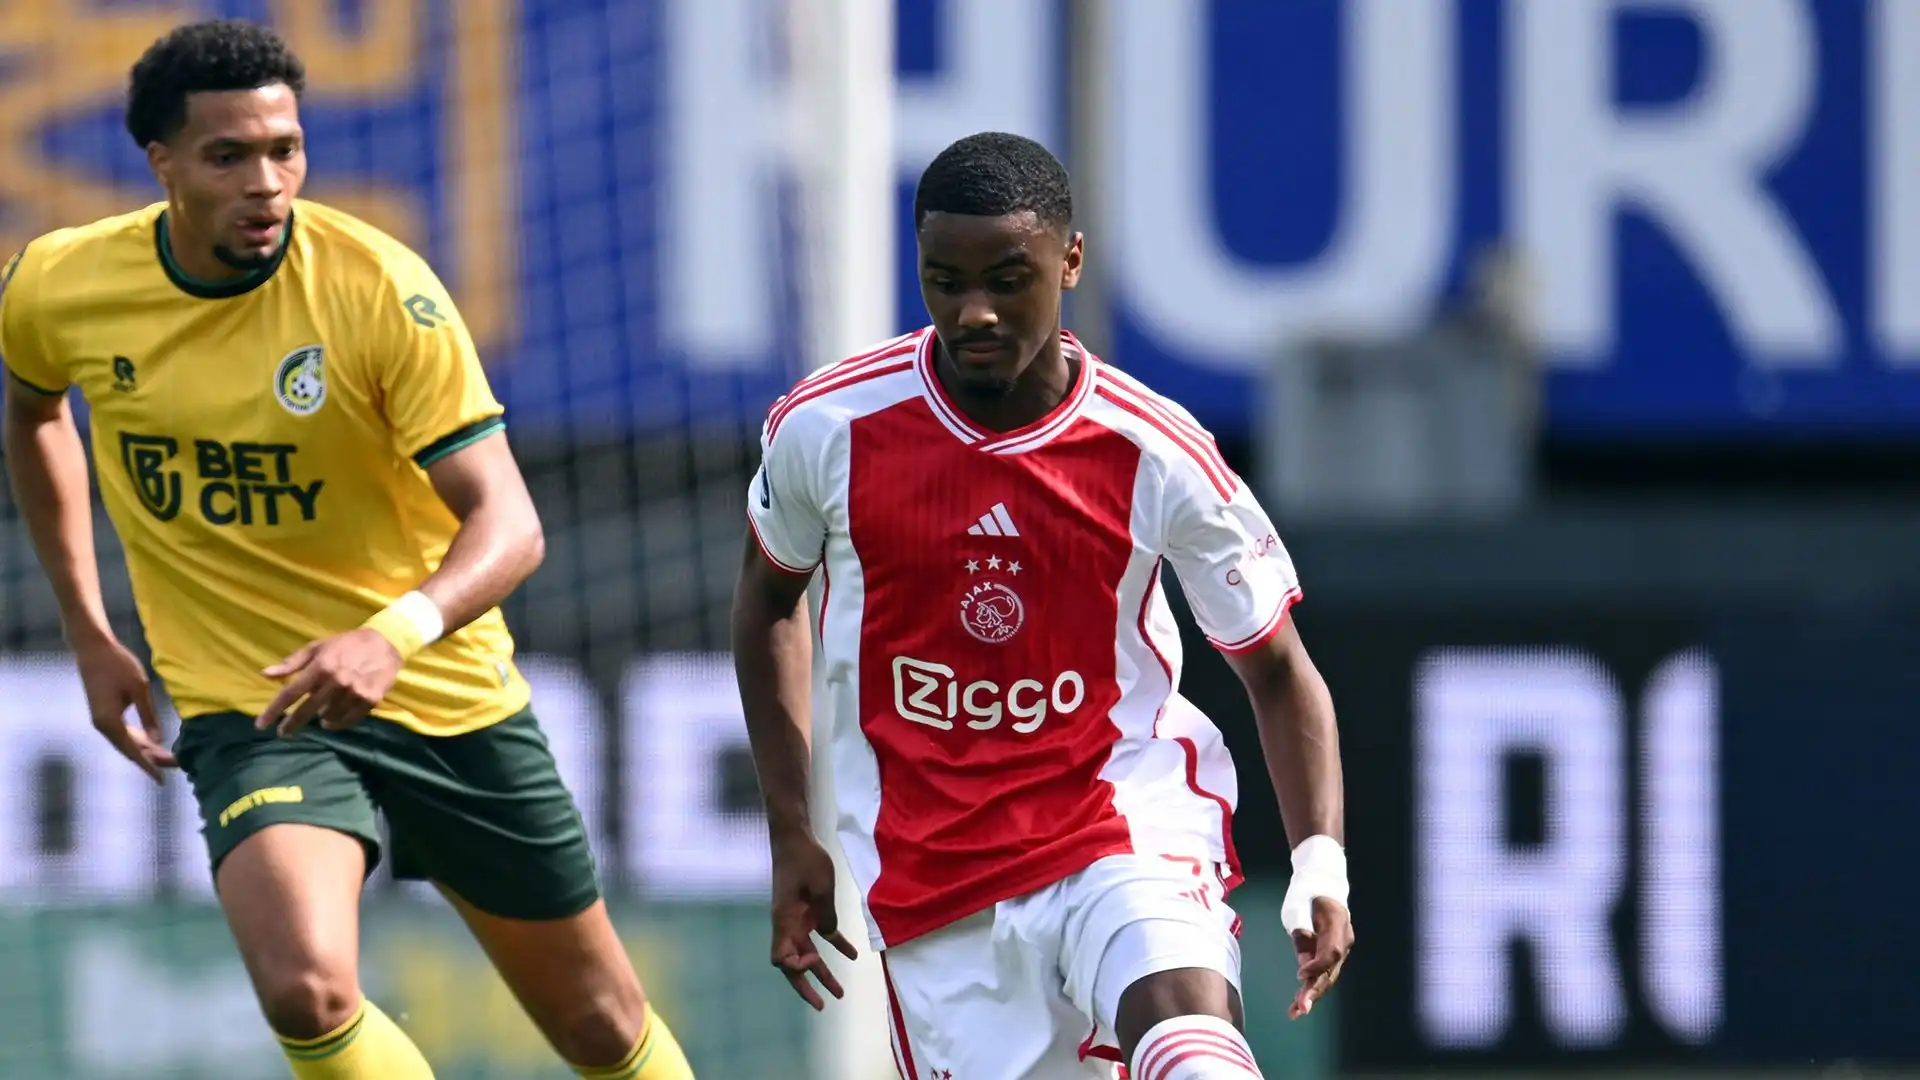 Nonostante l'annata turbolenta dell'Ajax, Hato sta sfornando grandi prestazioni